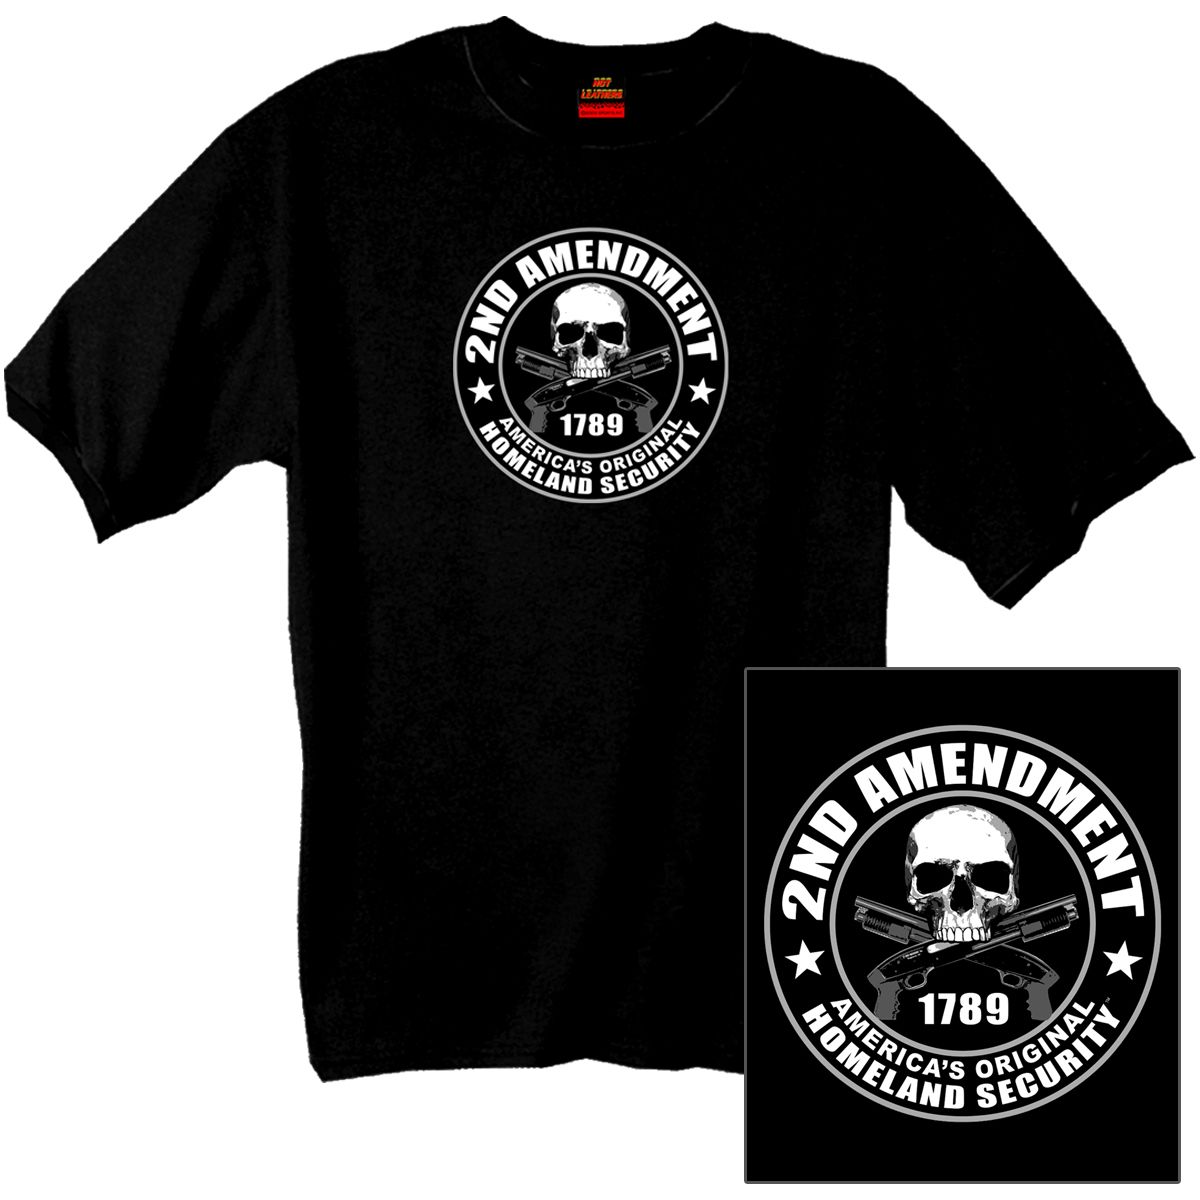 2nd Amendment Americas Original Homeland Security T Shirt New Skull